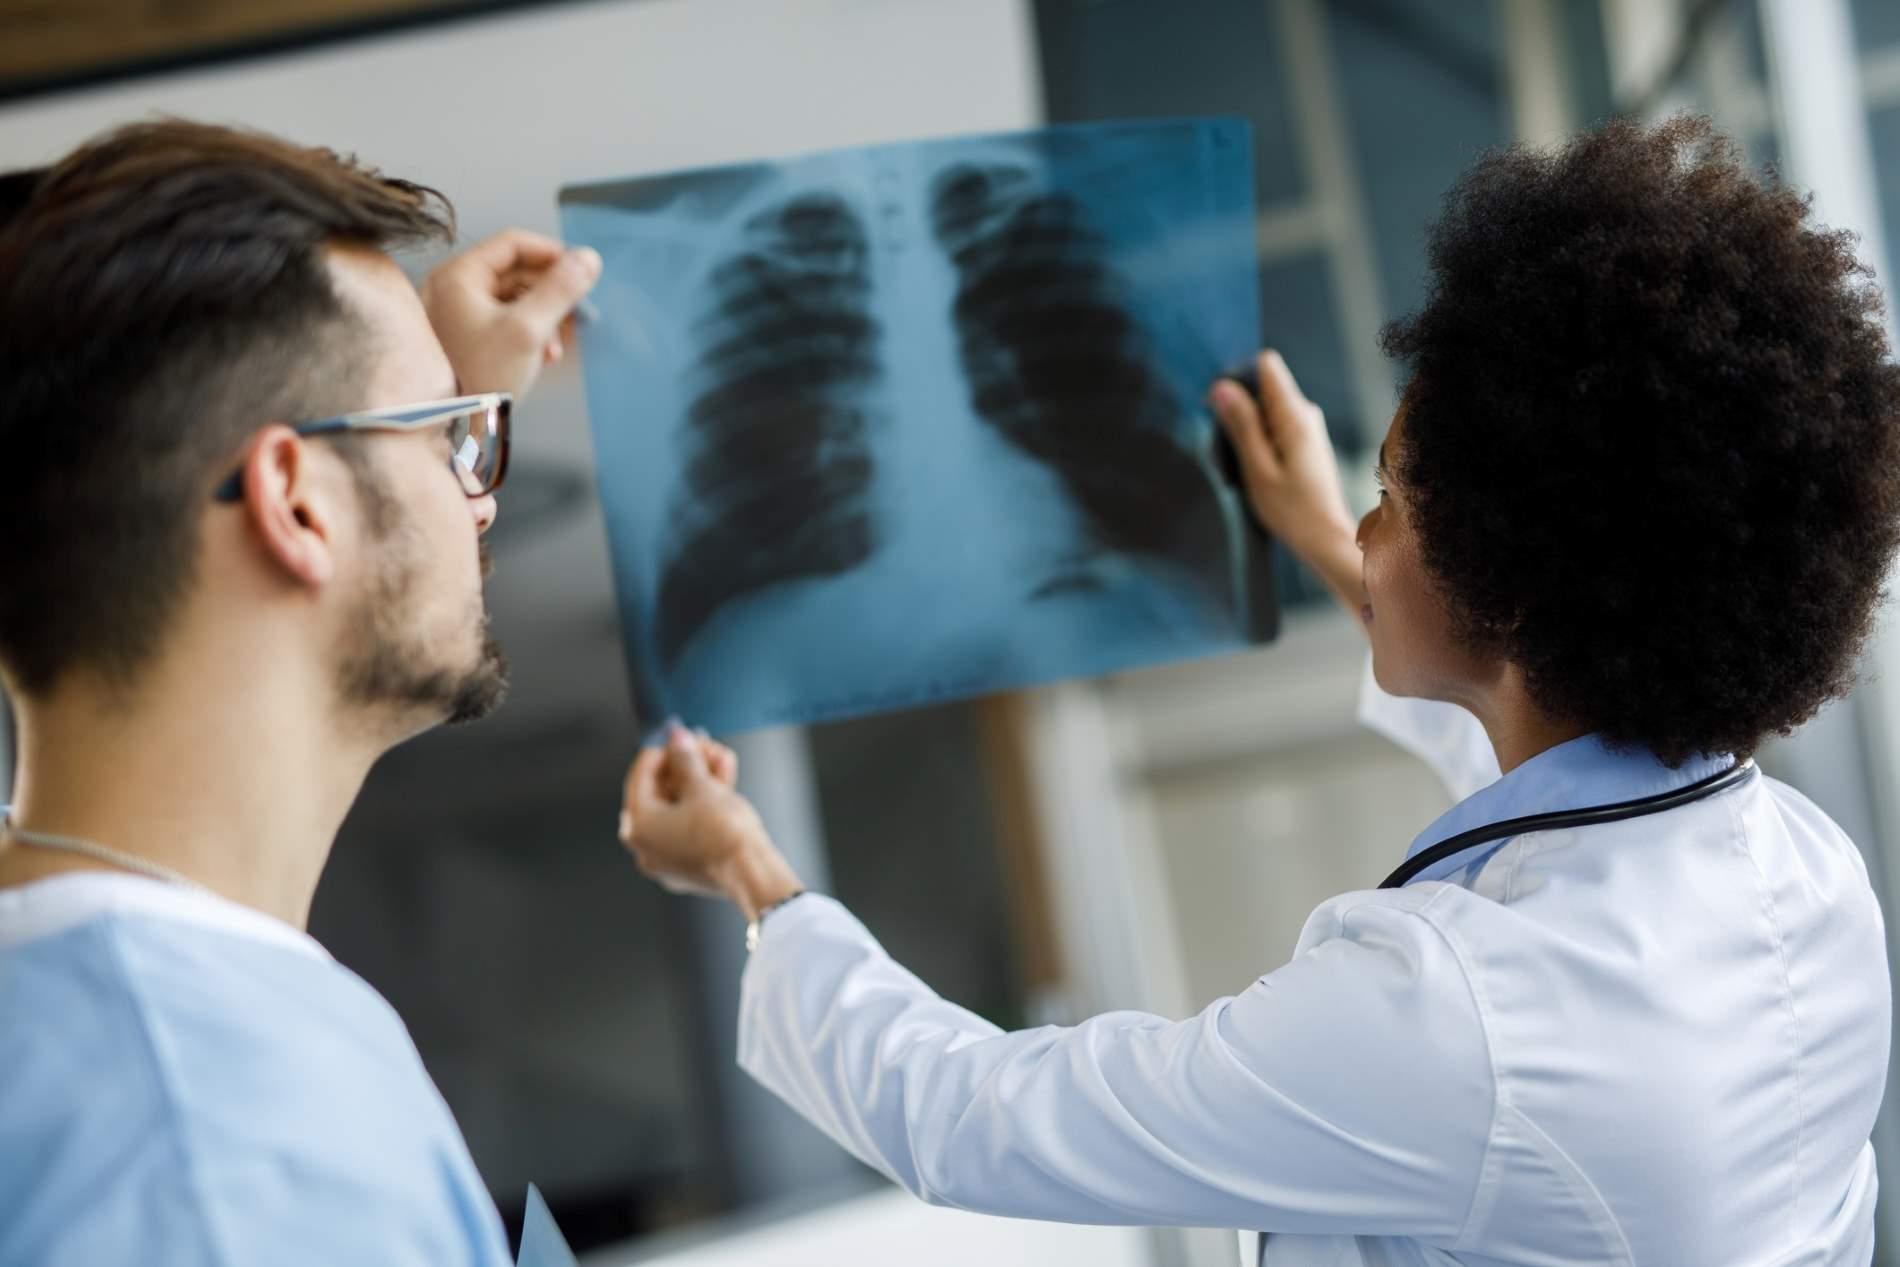 Röntgenpass: Ein Mann und eine Frau betrachten ein Röntgenbild. 